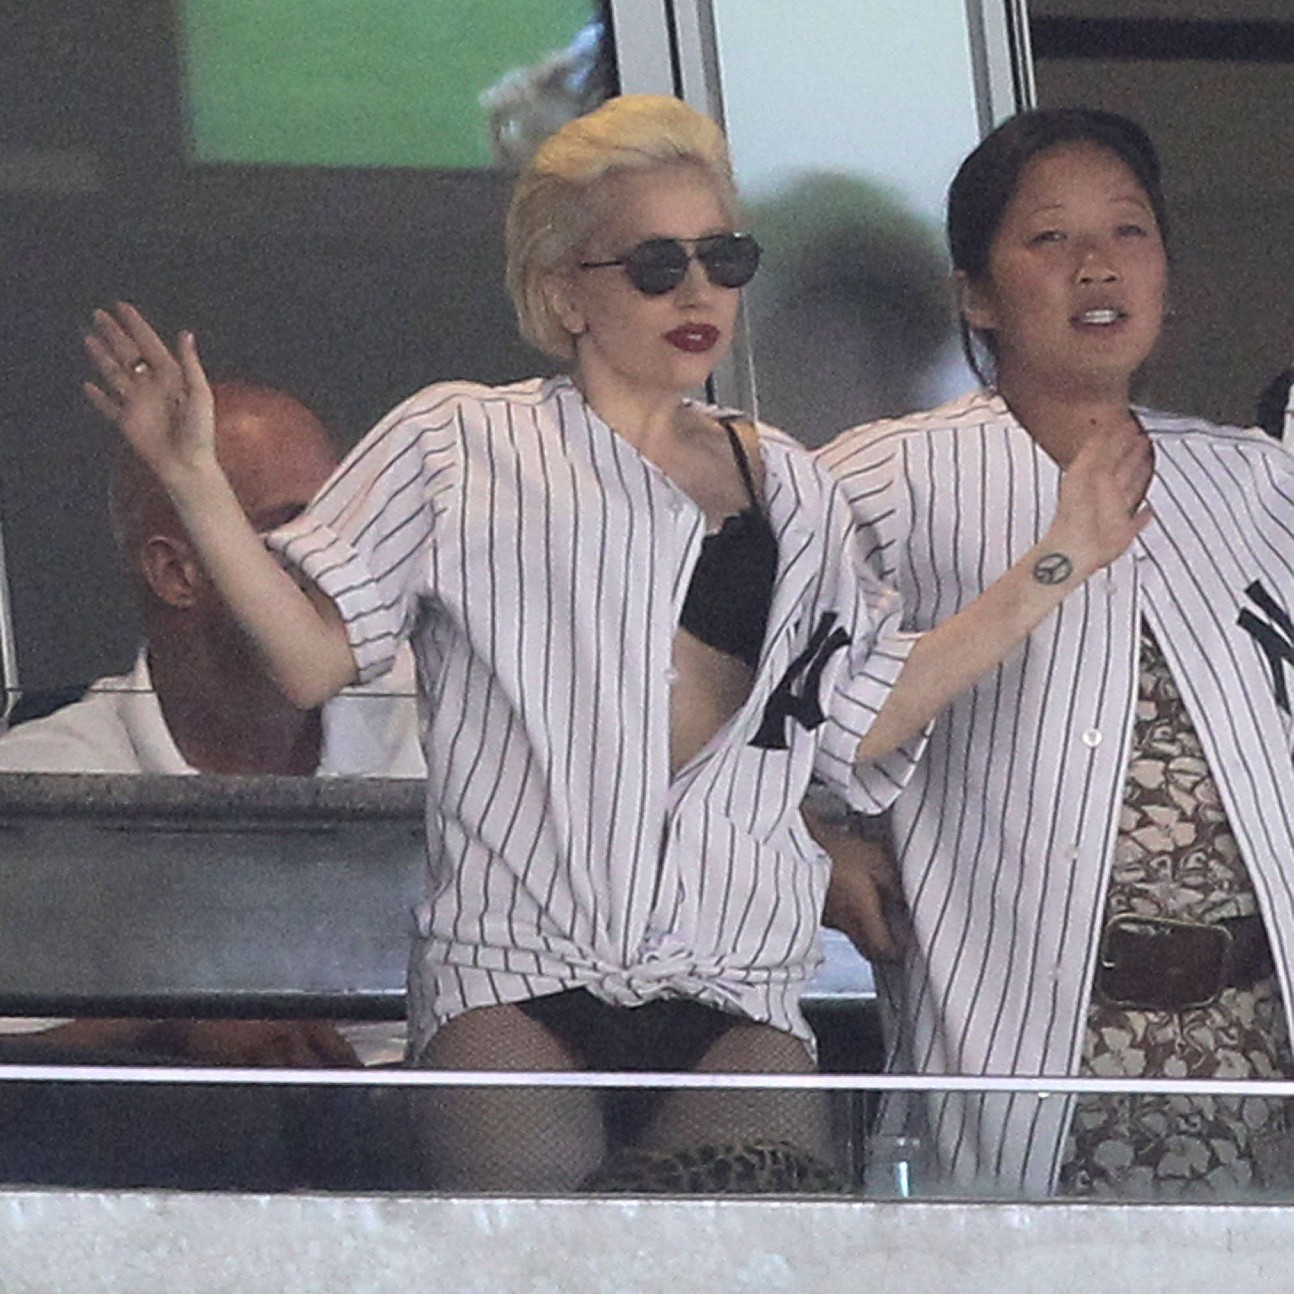 Lady Gaga Yankee Baseball Game Outfit - Lady Gaga No Pants at